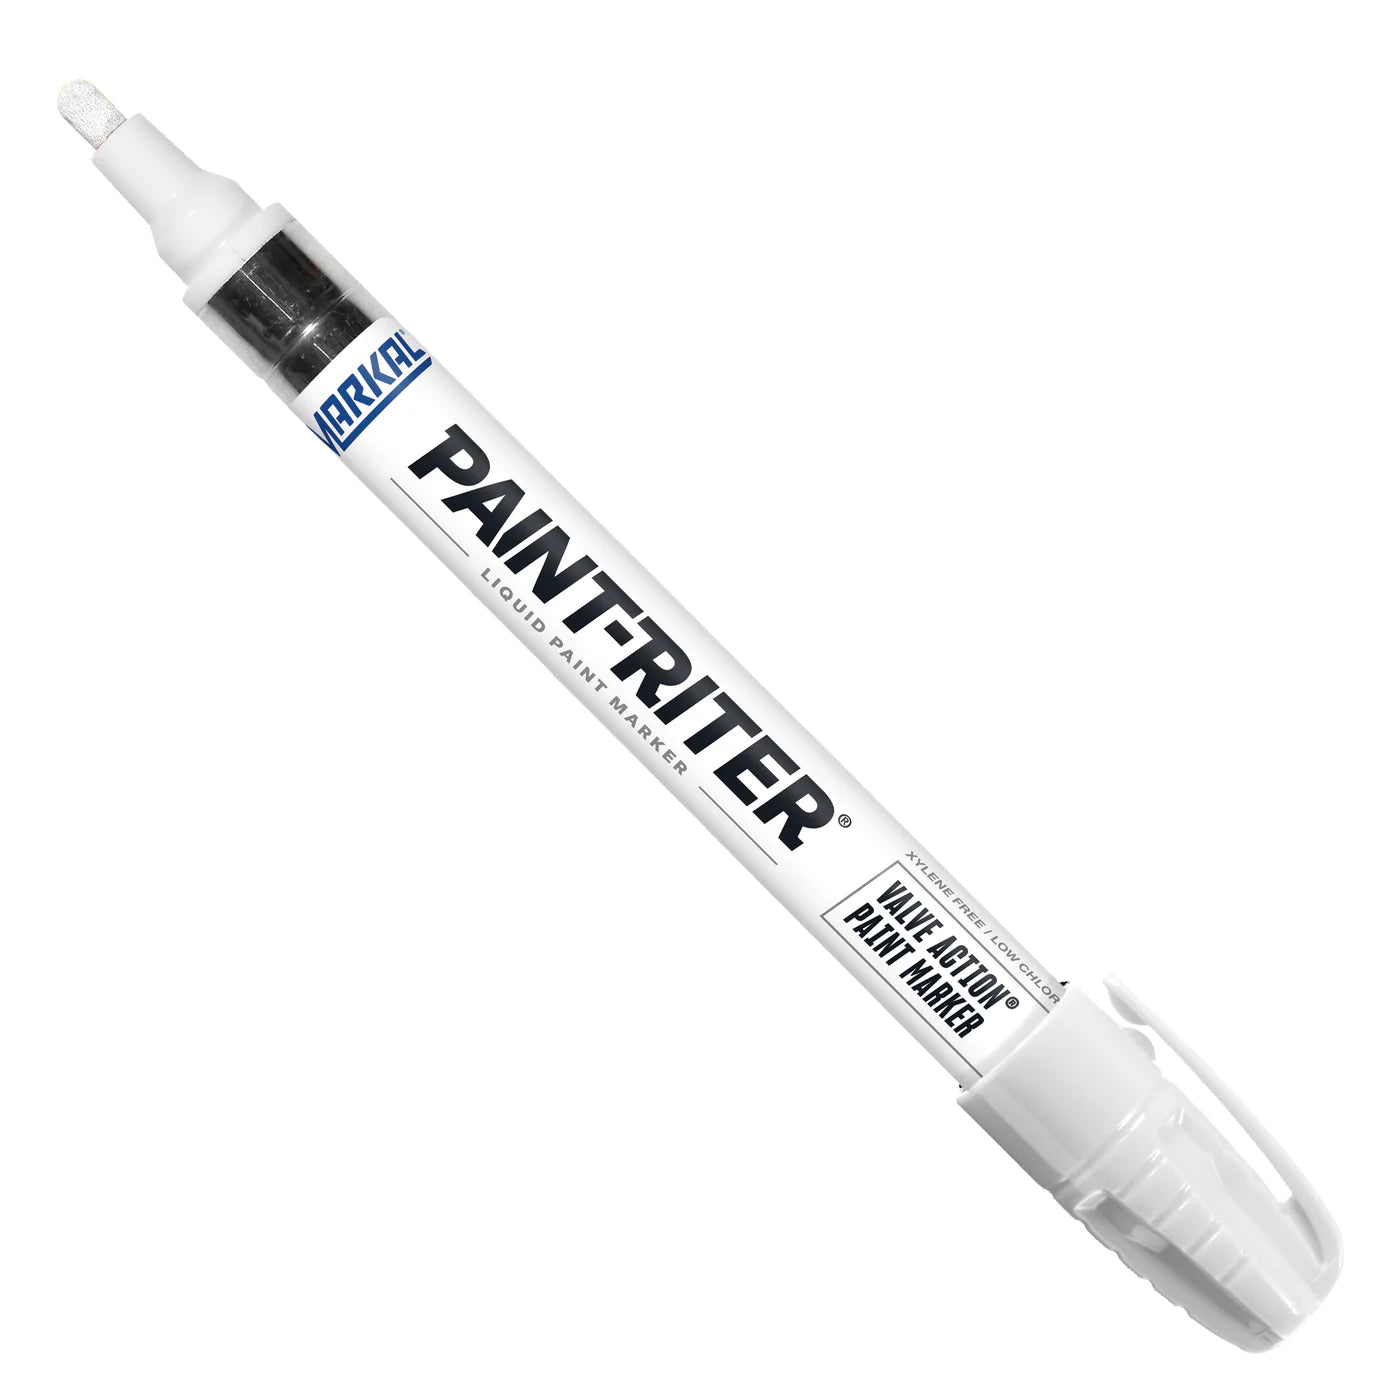 Markal 96820 Paint-Riter Valve Action Marker, White